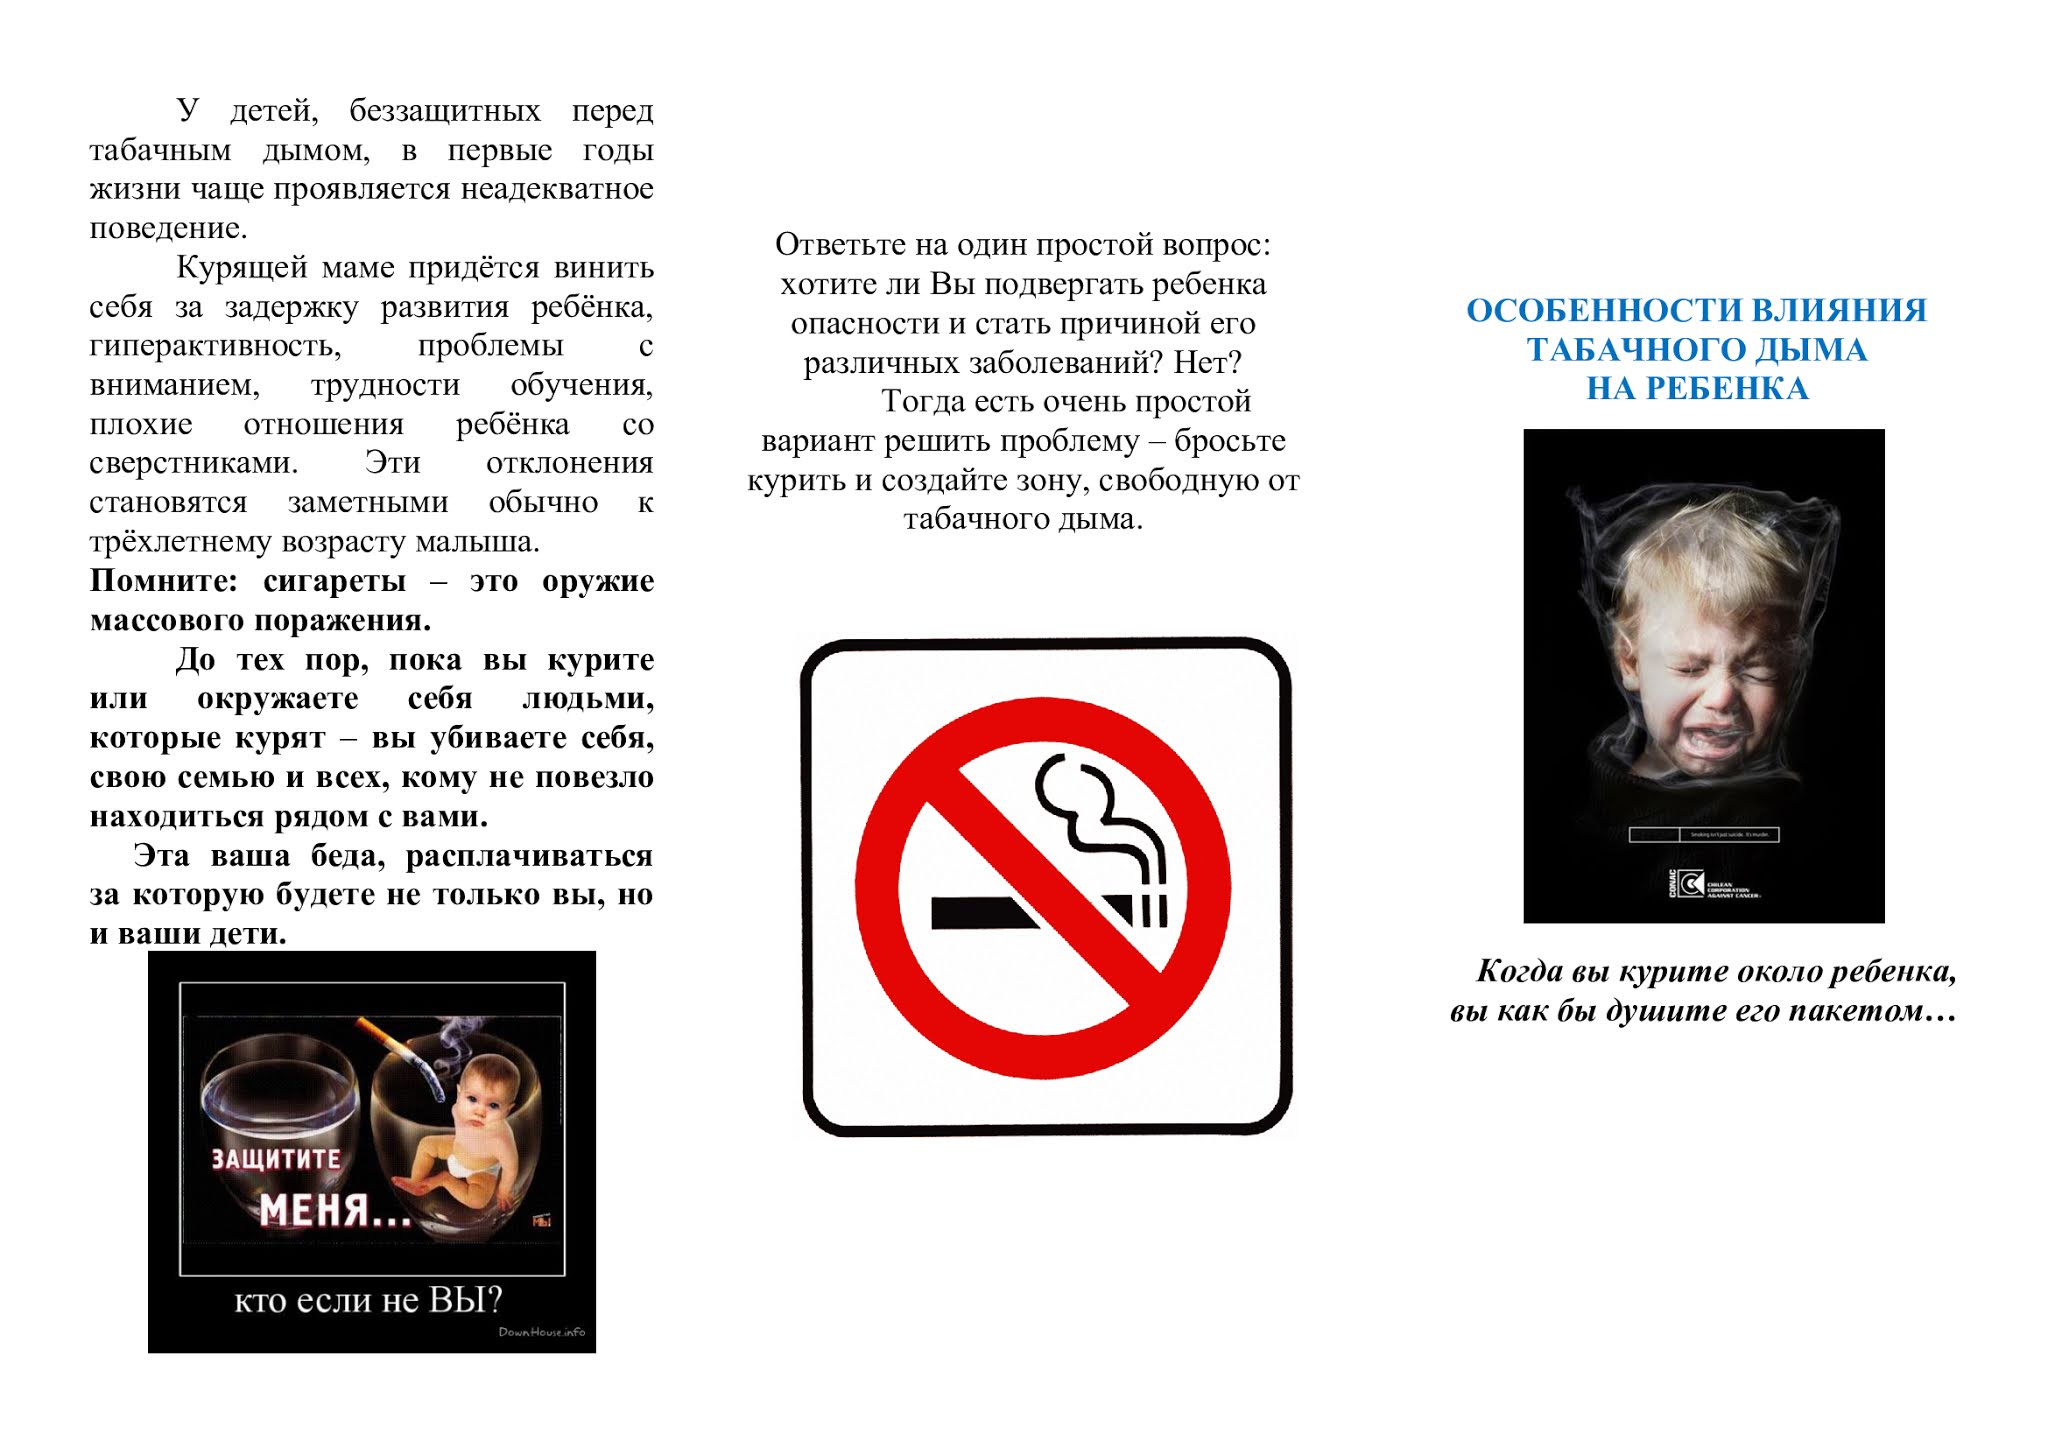 Буклет на тему курения. Листовка о вреде пассивного курения для детей. Особенности влияния табачного дыма на ребенка. Влияние пассивного курения на детей. Особенности пассивного курение.